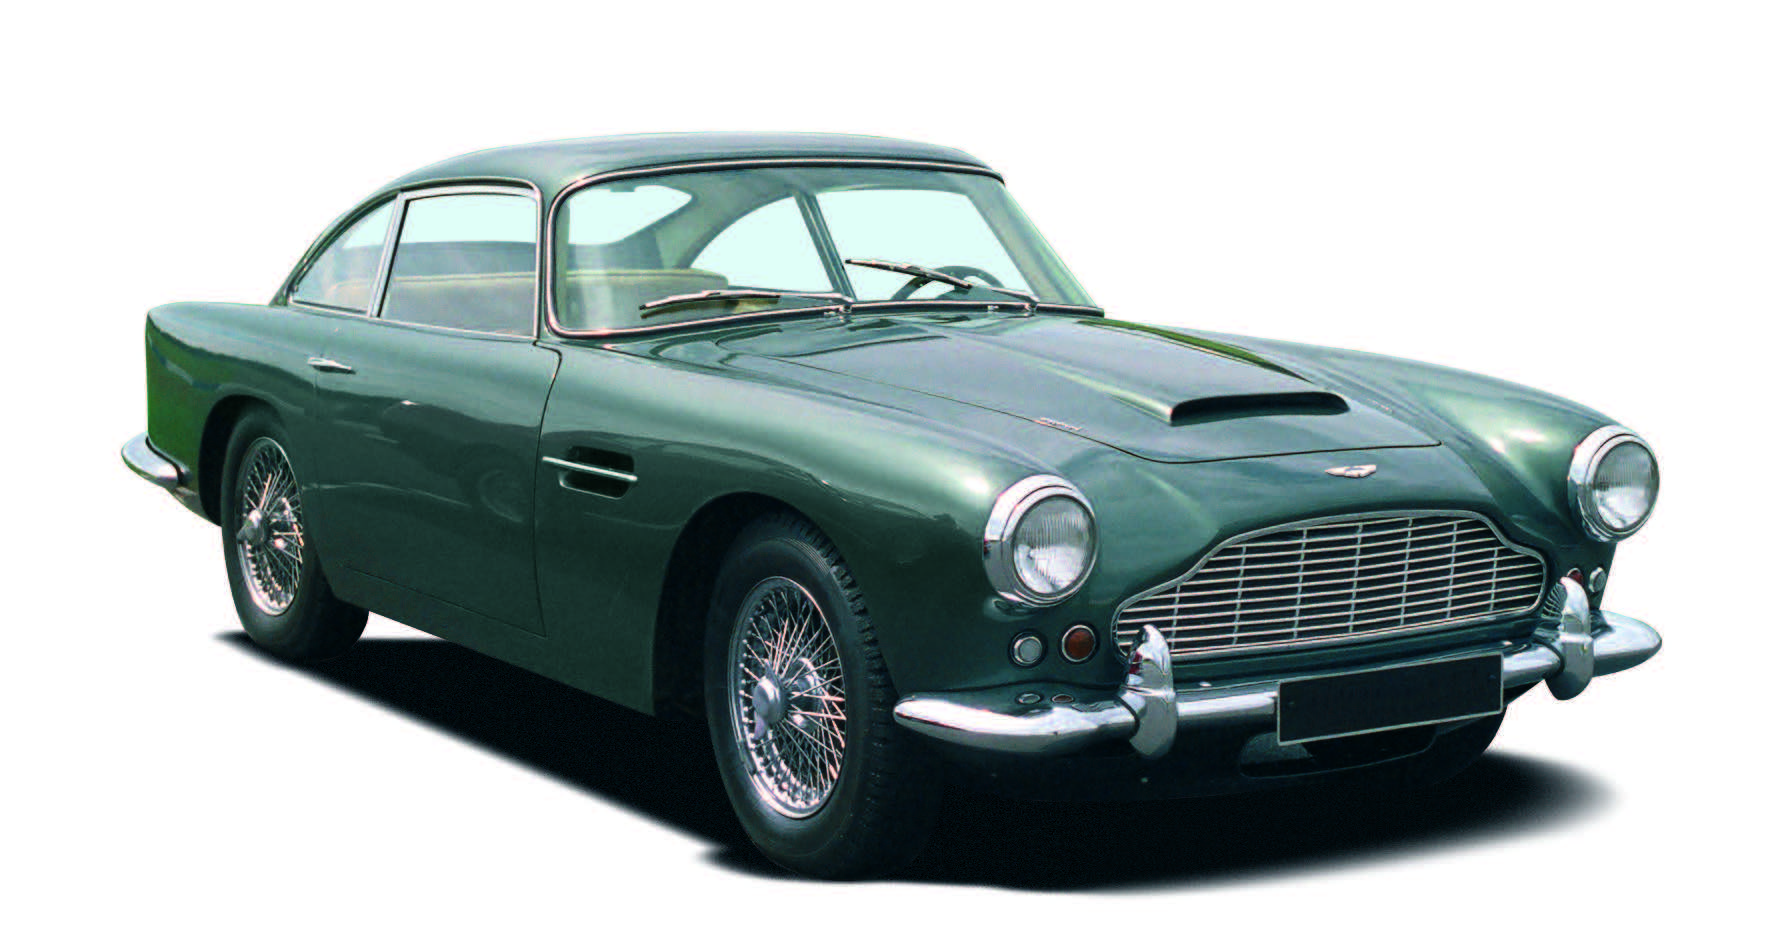 Vintage Aston Martin Logo - Aston Martin